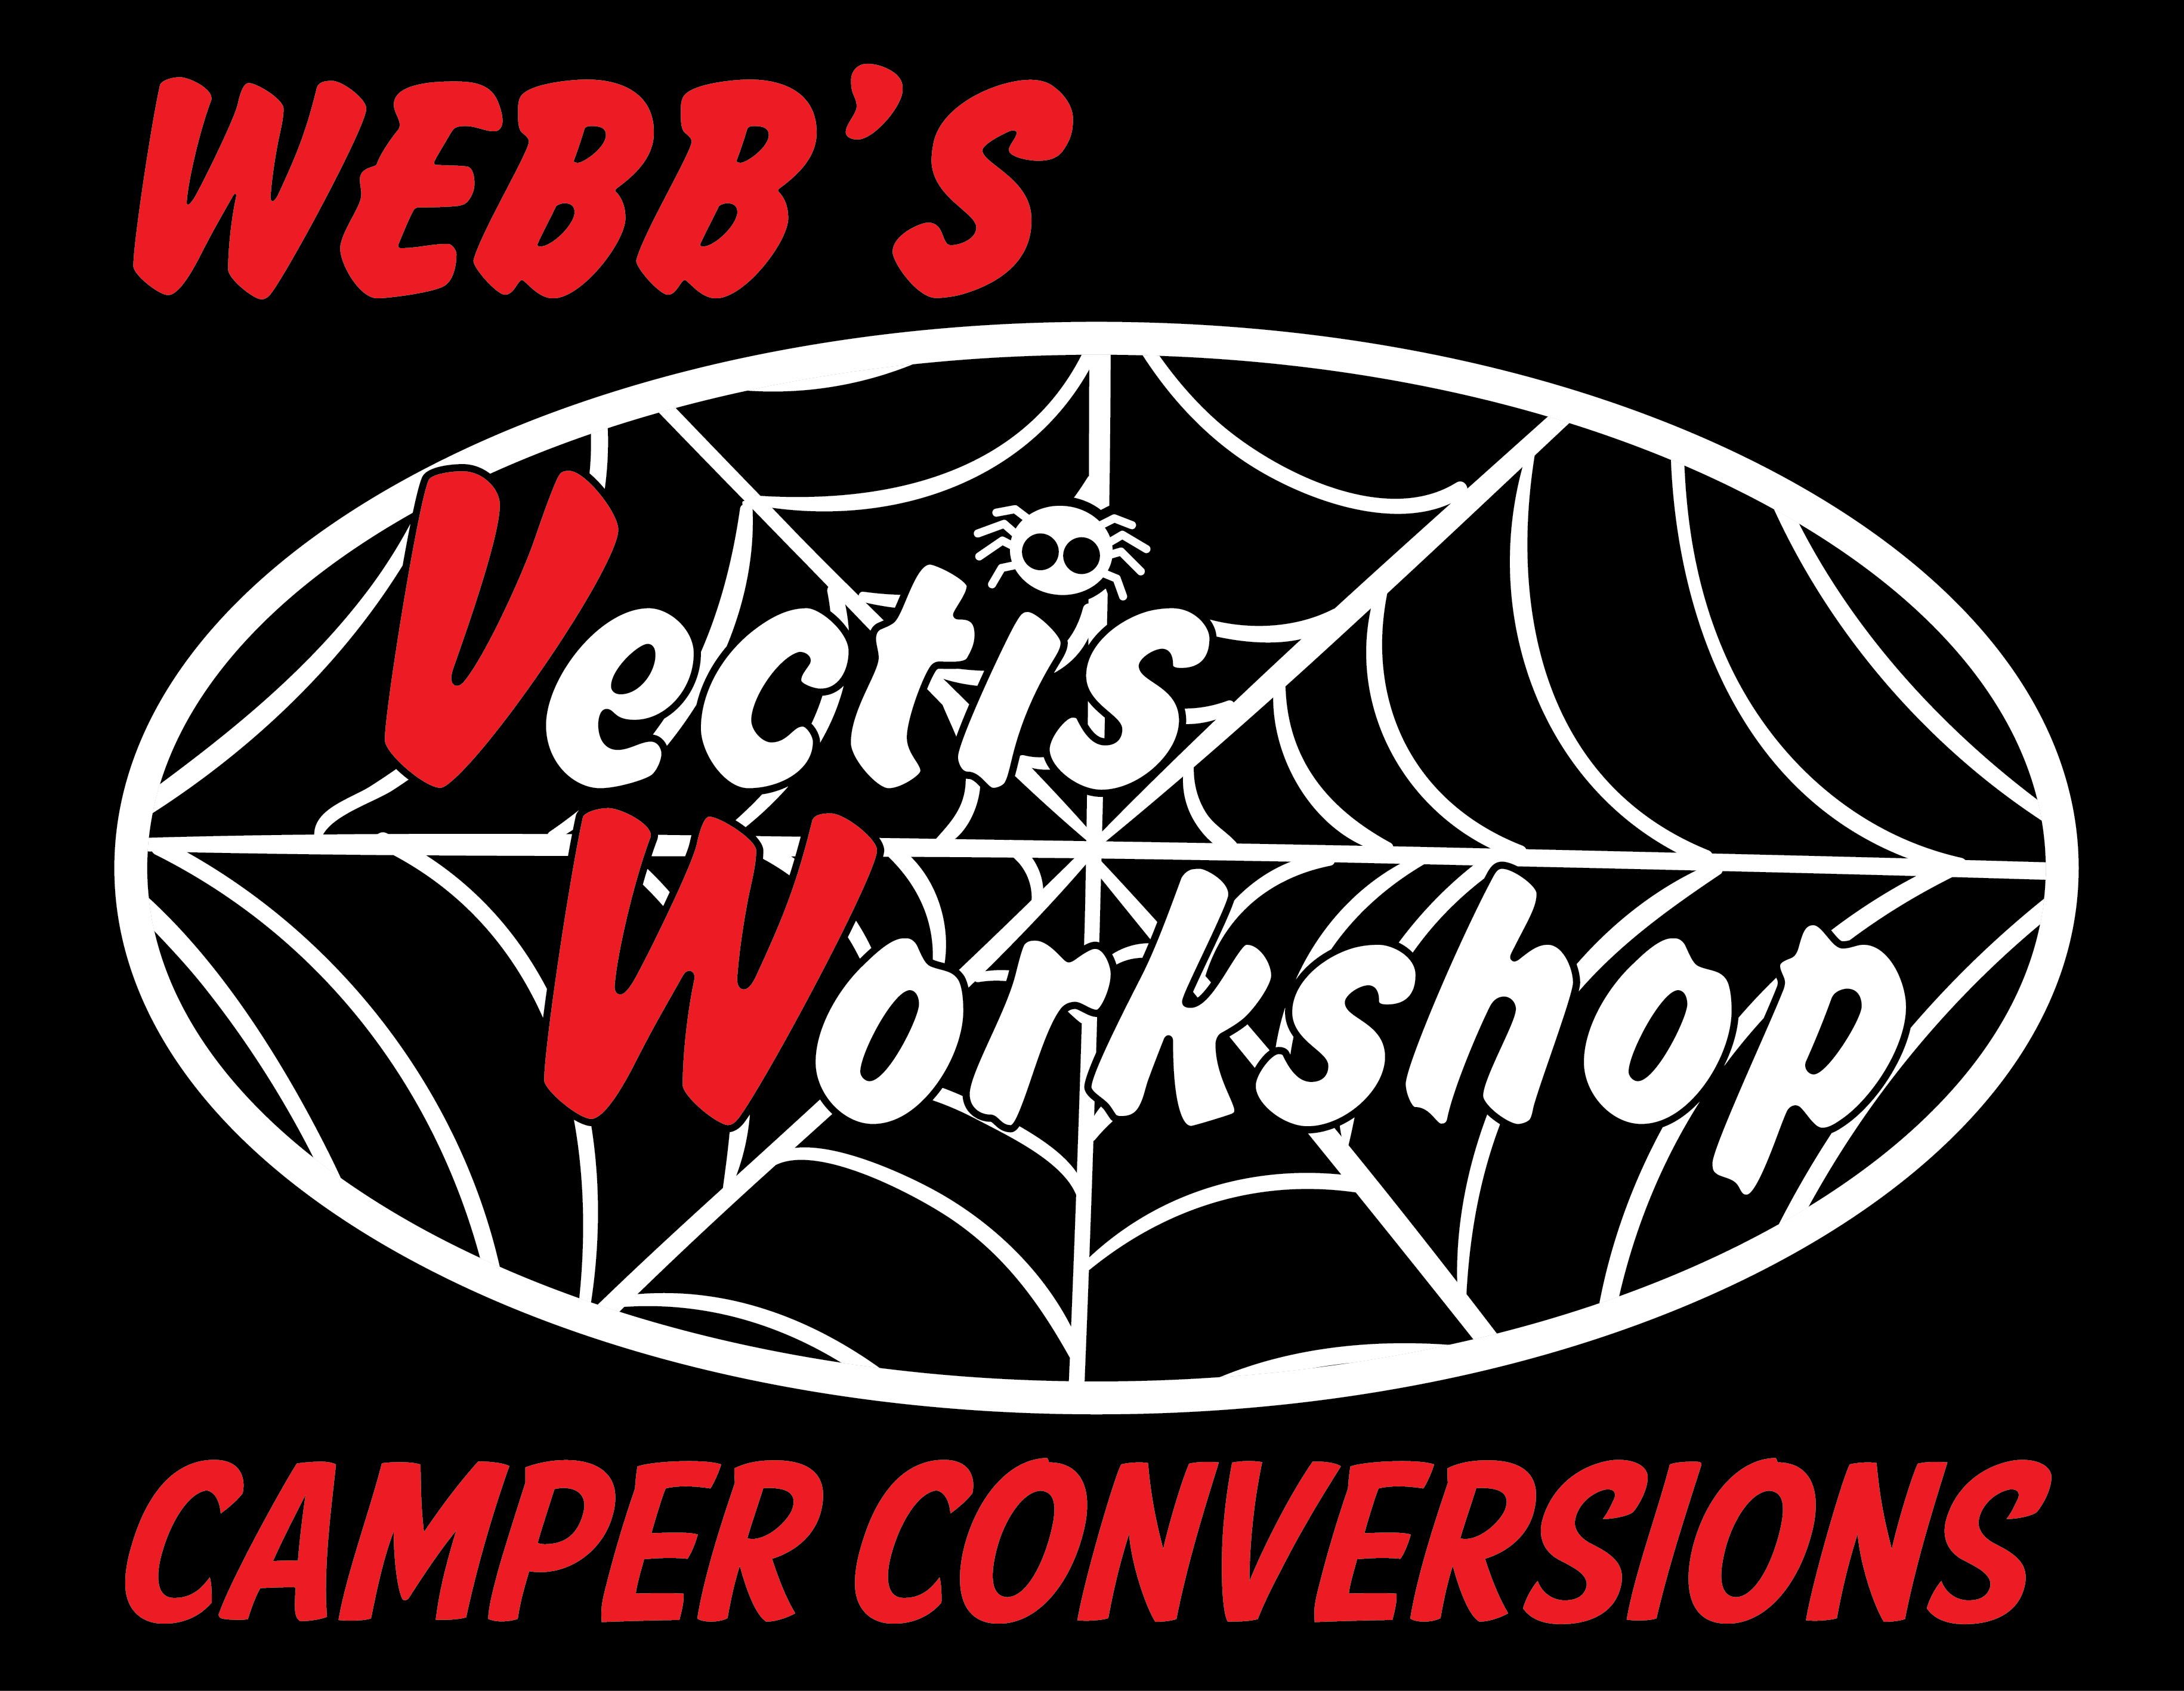 Webb's Vectis workshop